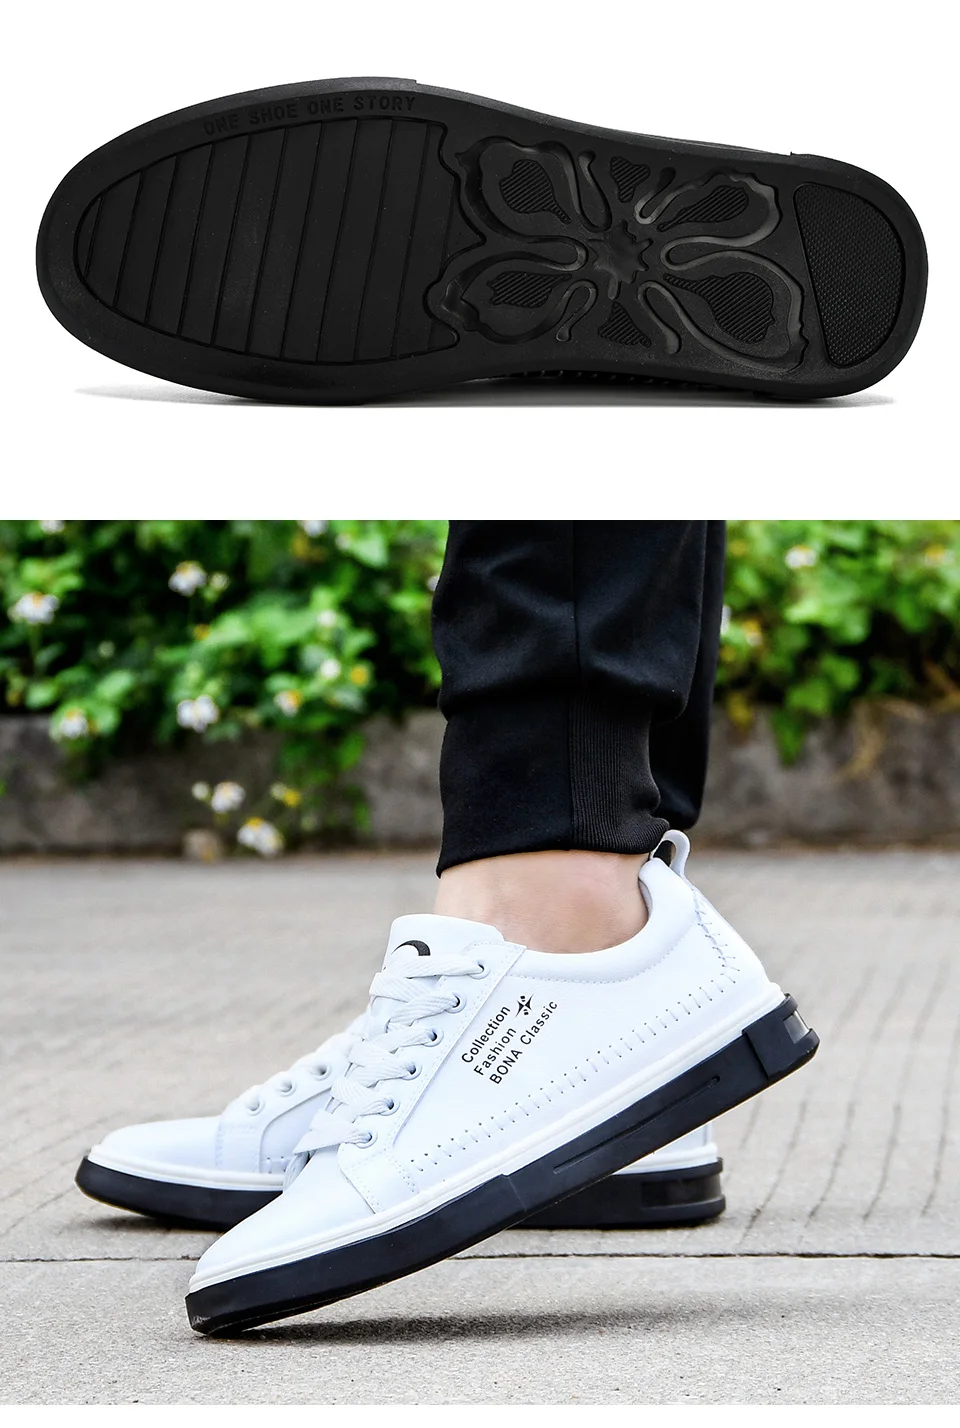 BONA/Новинка года; классические мужские кроссовки; обувь для скейтбординга; уличная Удобная однотонная обувь унисекс для влюбленных; спортивная обувь на шнуровке для мужчин